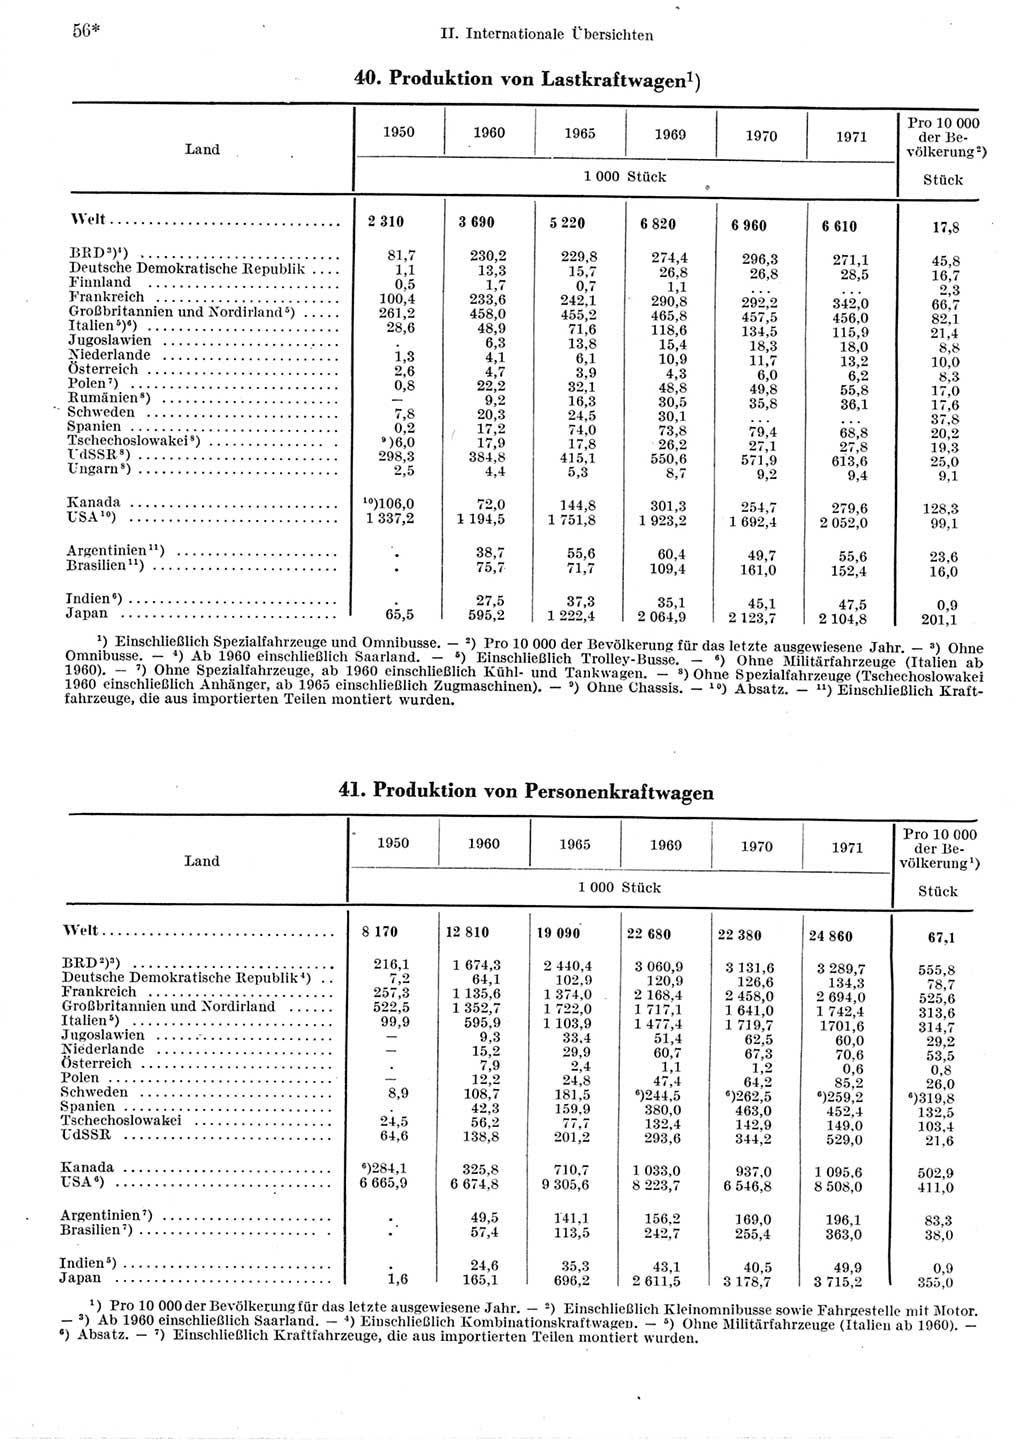 Statistisches Jahrbuch der Deutschen Demokratischen Republik (DDR) 1973, Seite 56 (Stat. Jb. DDR 1973, S. 56)